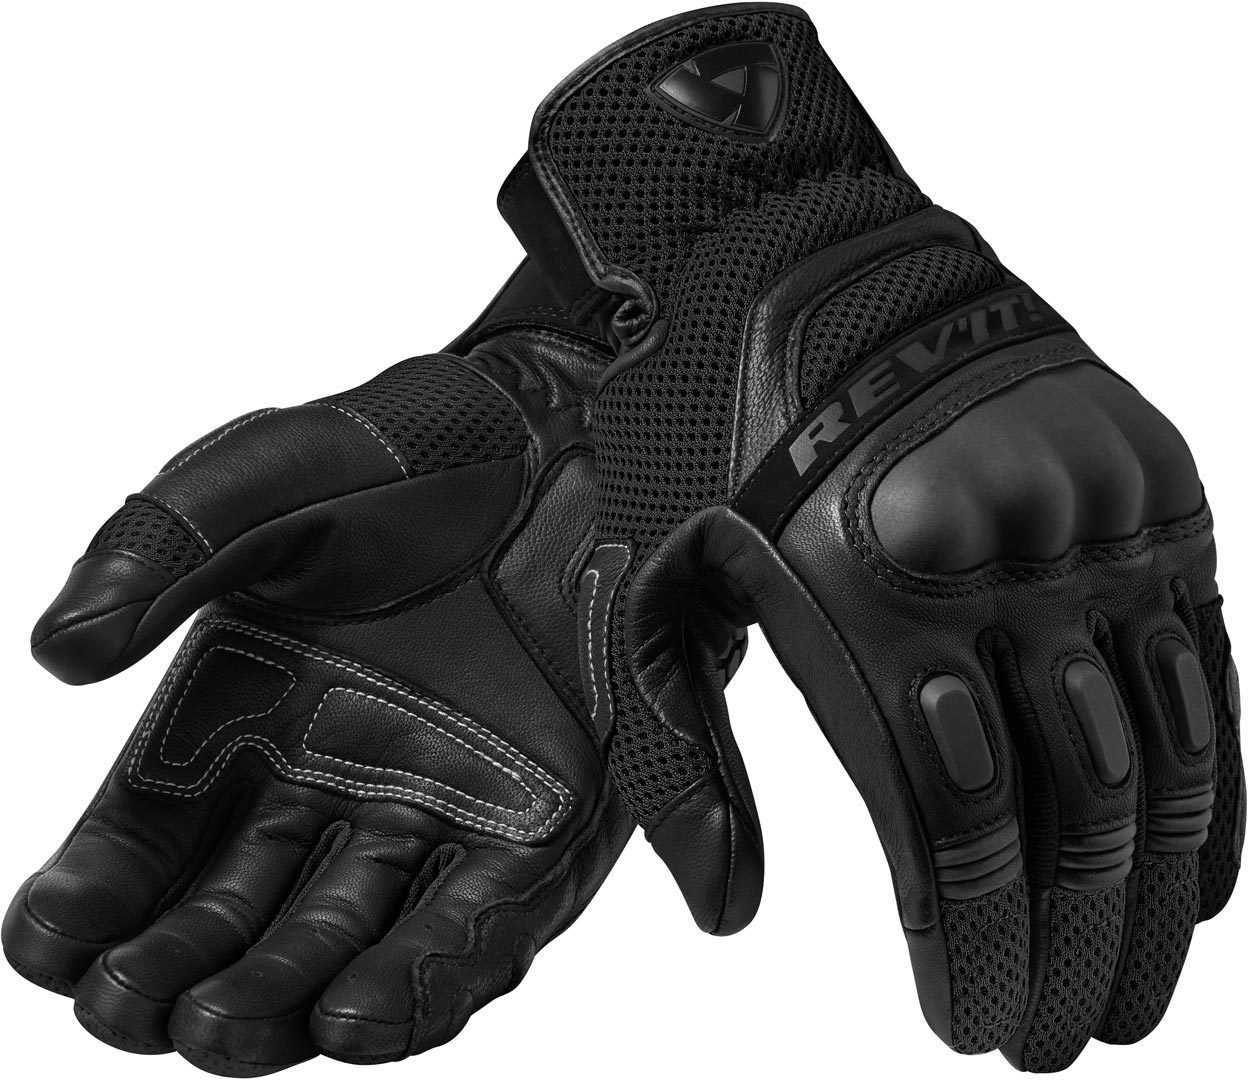 Revit Motorradhandschuhe Dirt 3 Motocross Handschuhe Black/Black